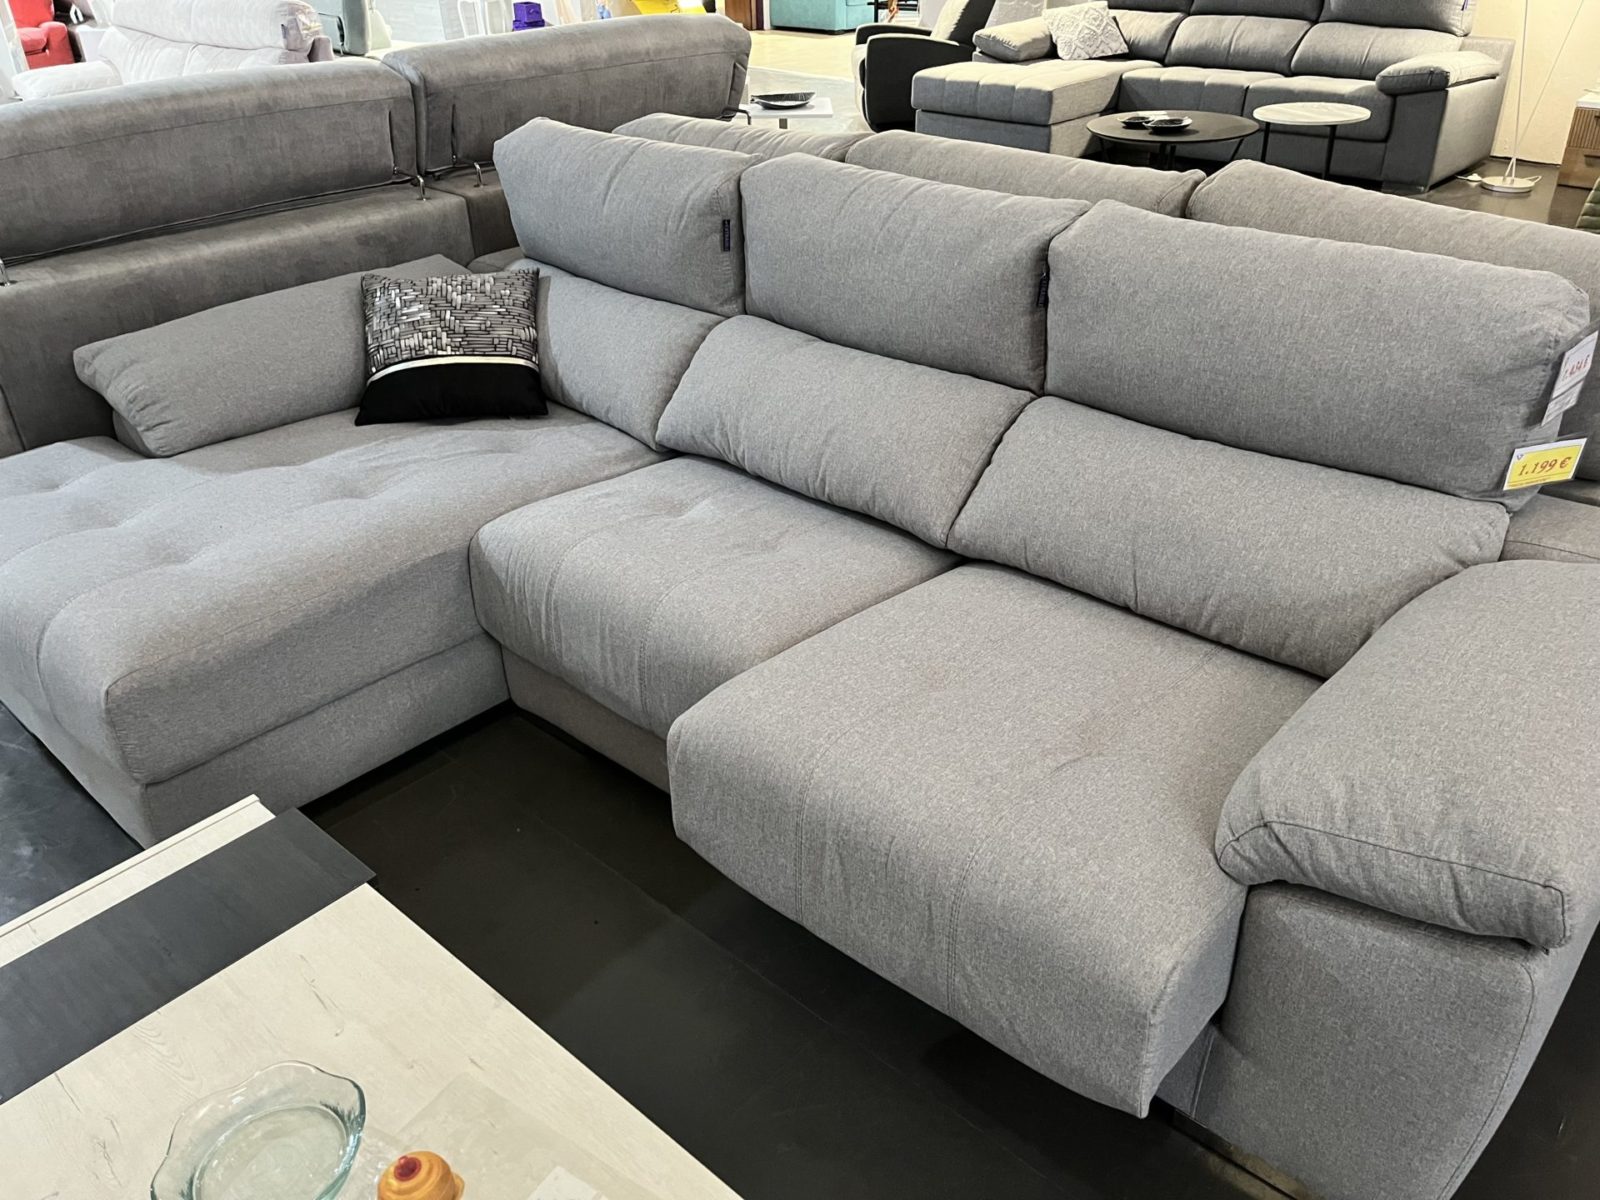 Comprar sofá chaiselongue extensible gris con tela antimanchas